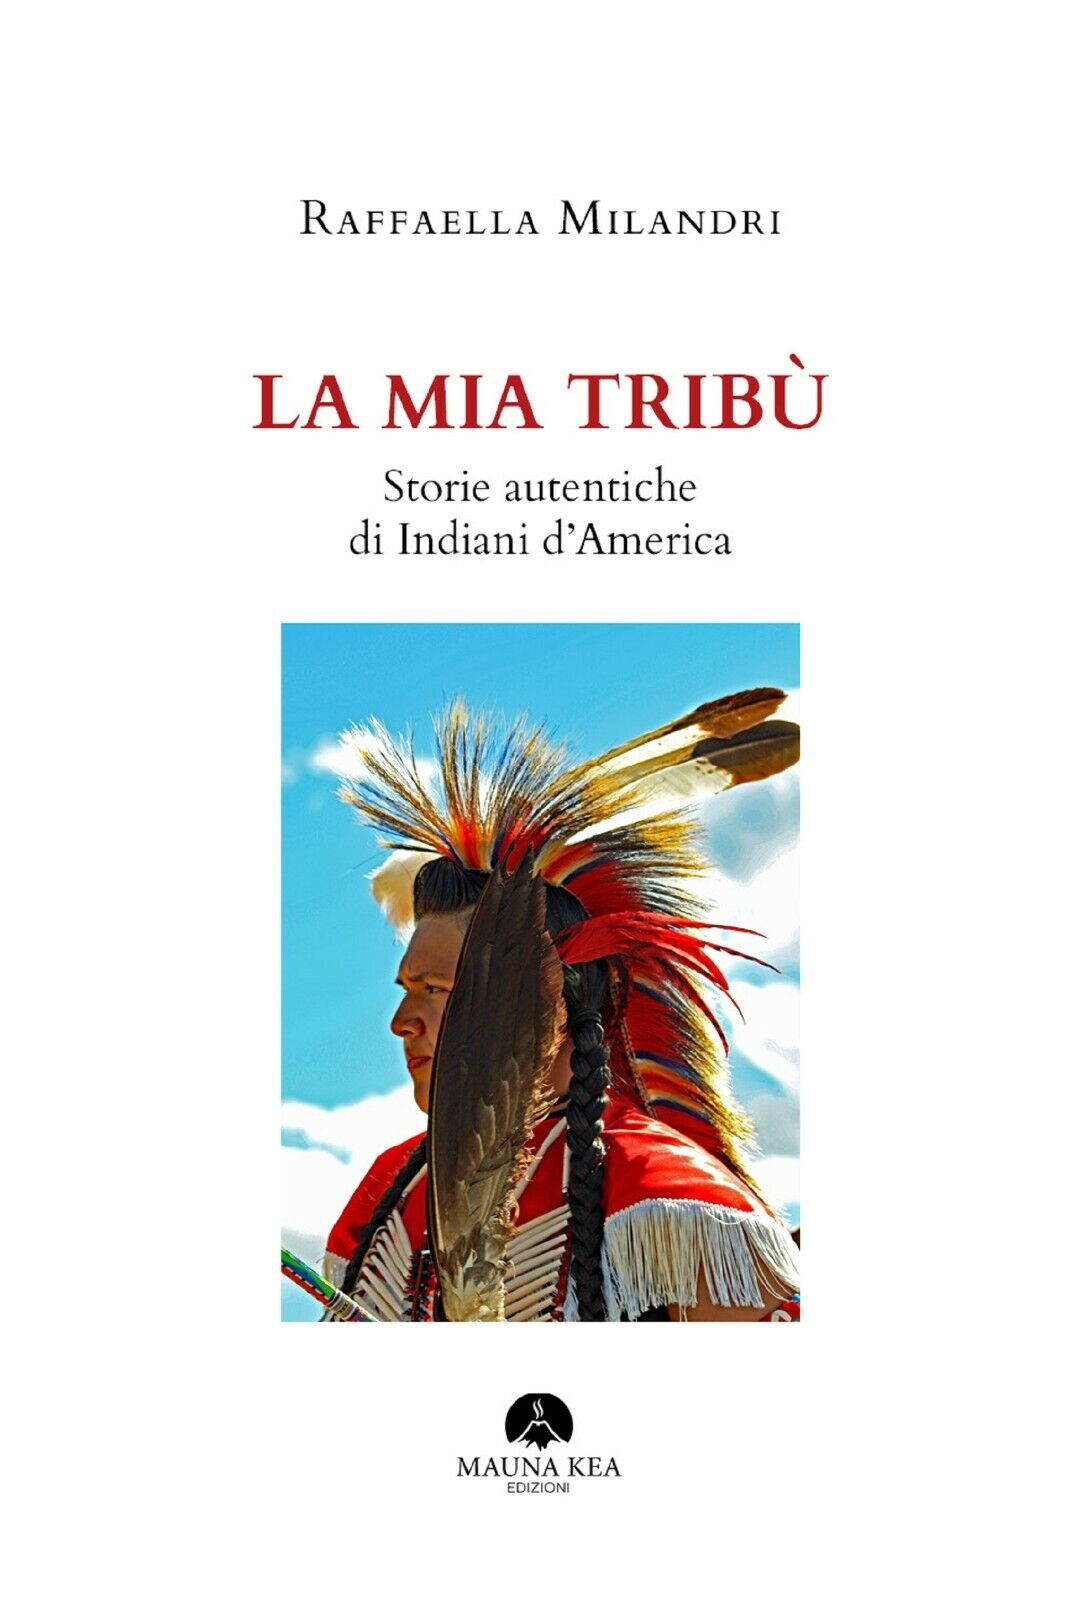 La mia trib?. Storie autentiche di indiani d'America di Raffaella Milandri,  202 libro usato